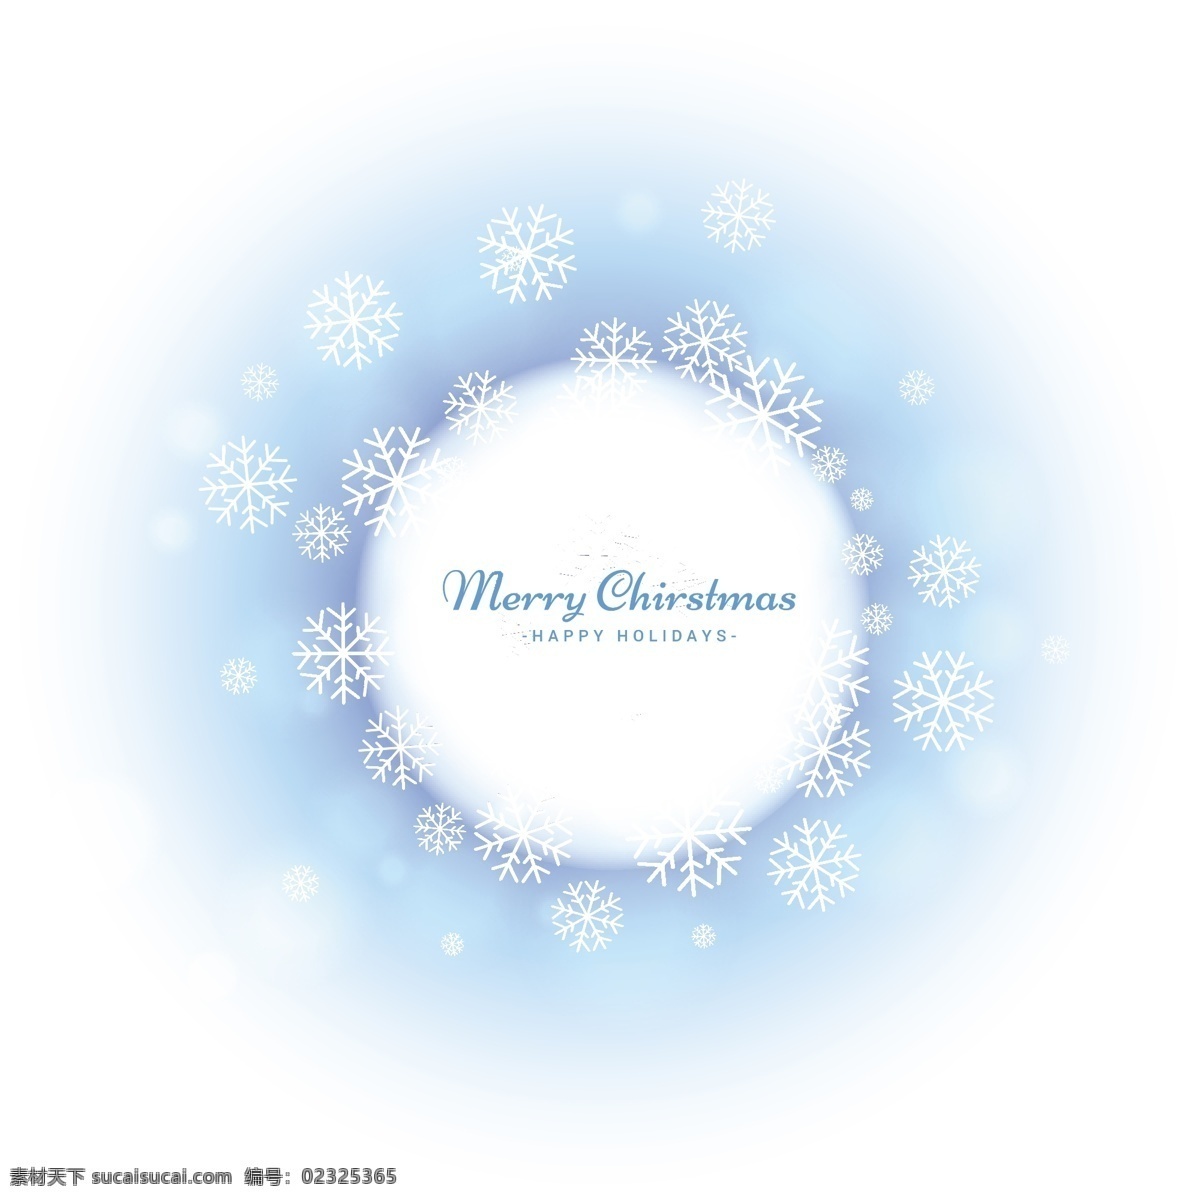 圣诞节 蓝色 雪花 背景 雪花背景 白色